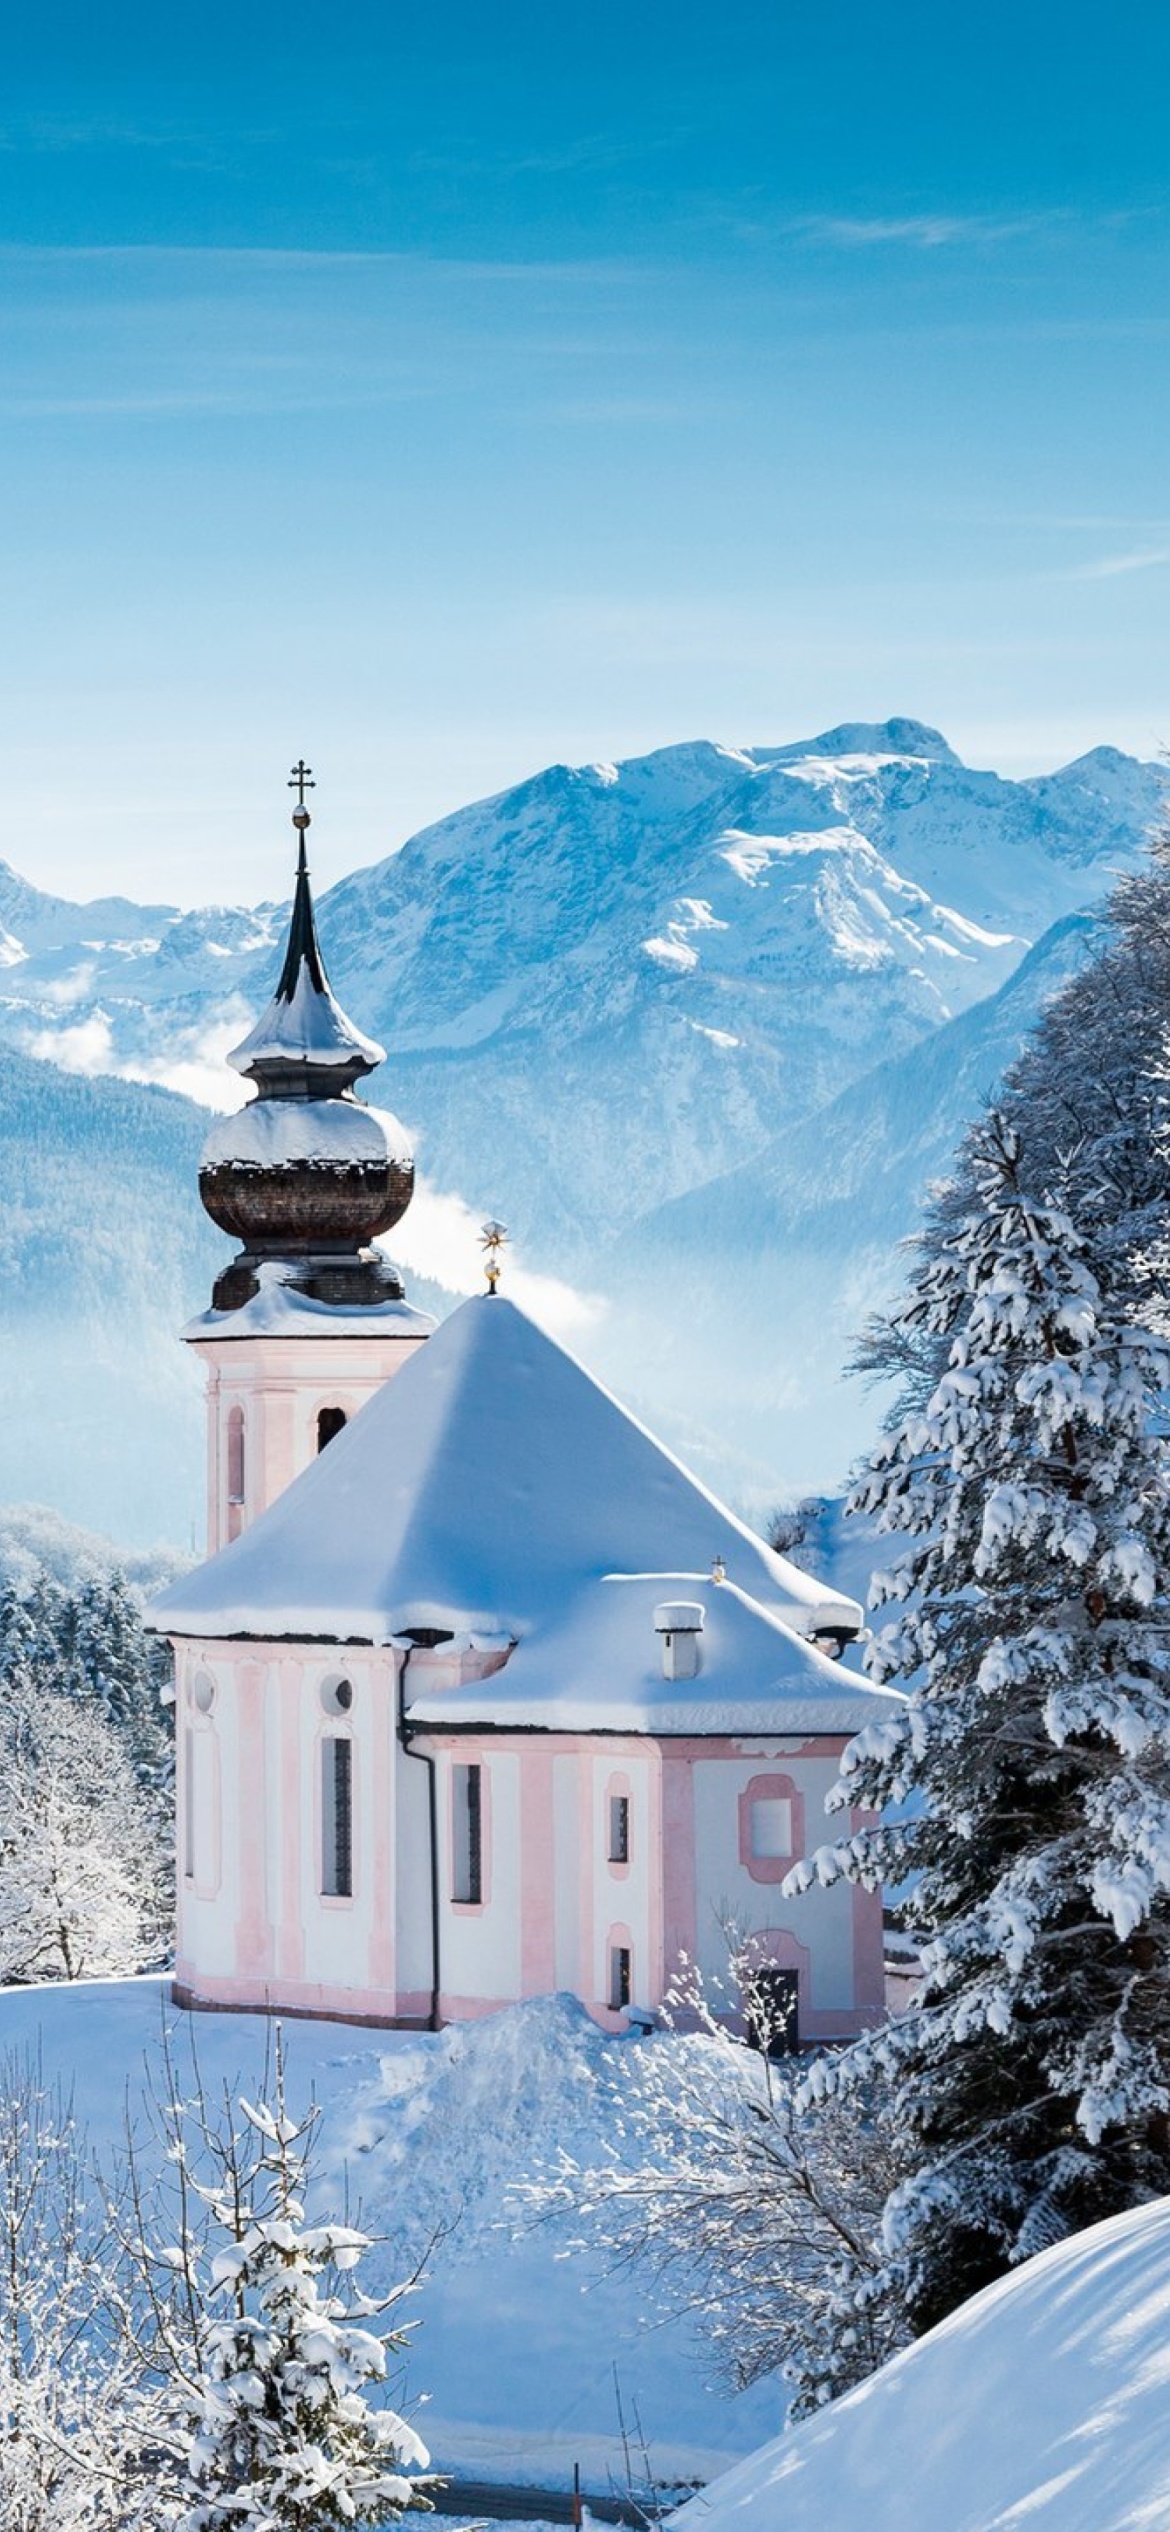 Bavaria under Snow wallpaper 1170x2532